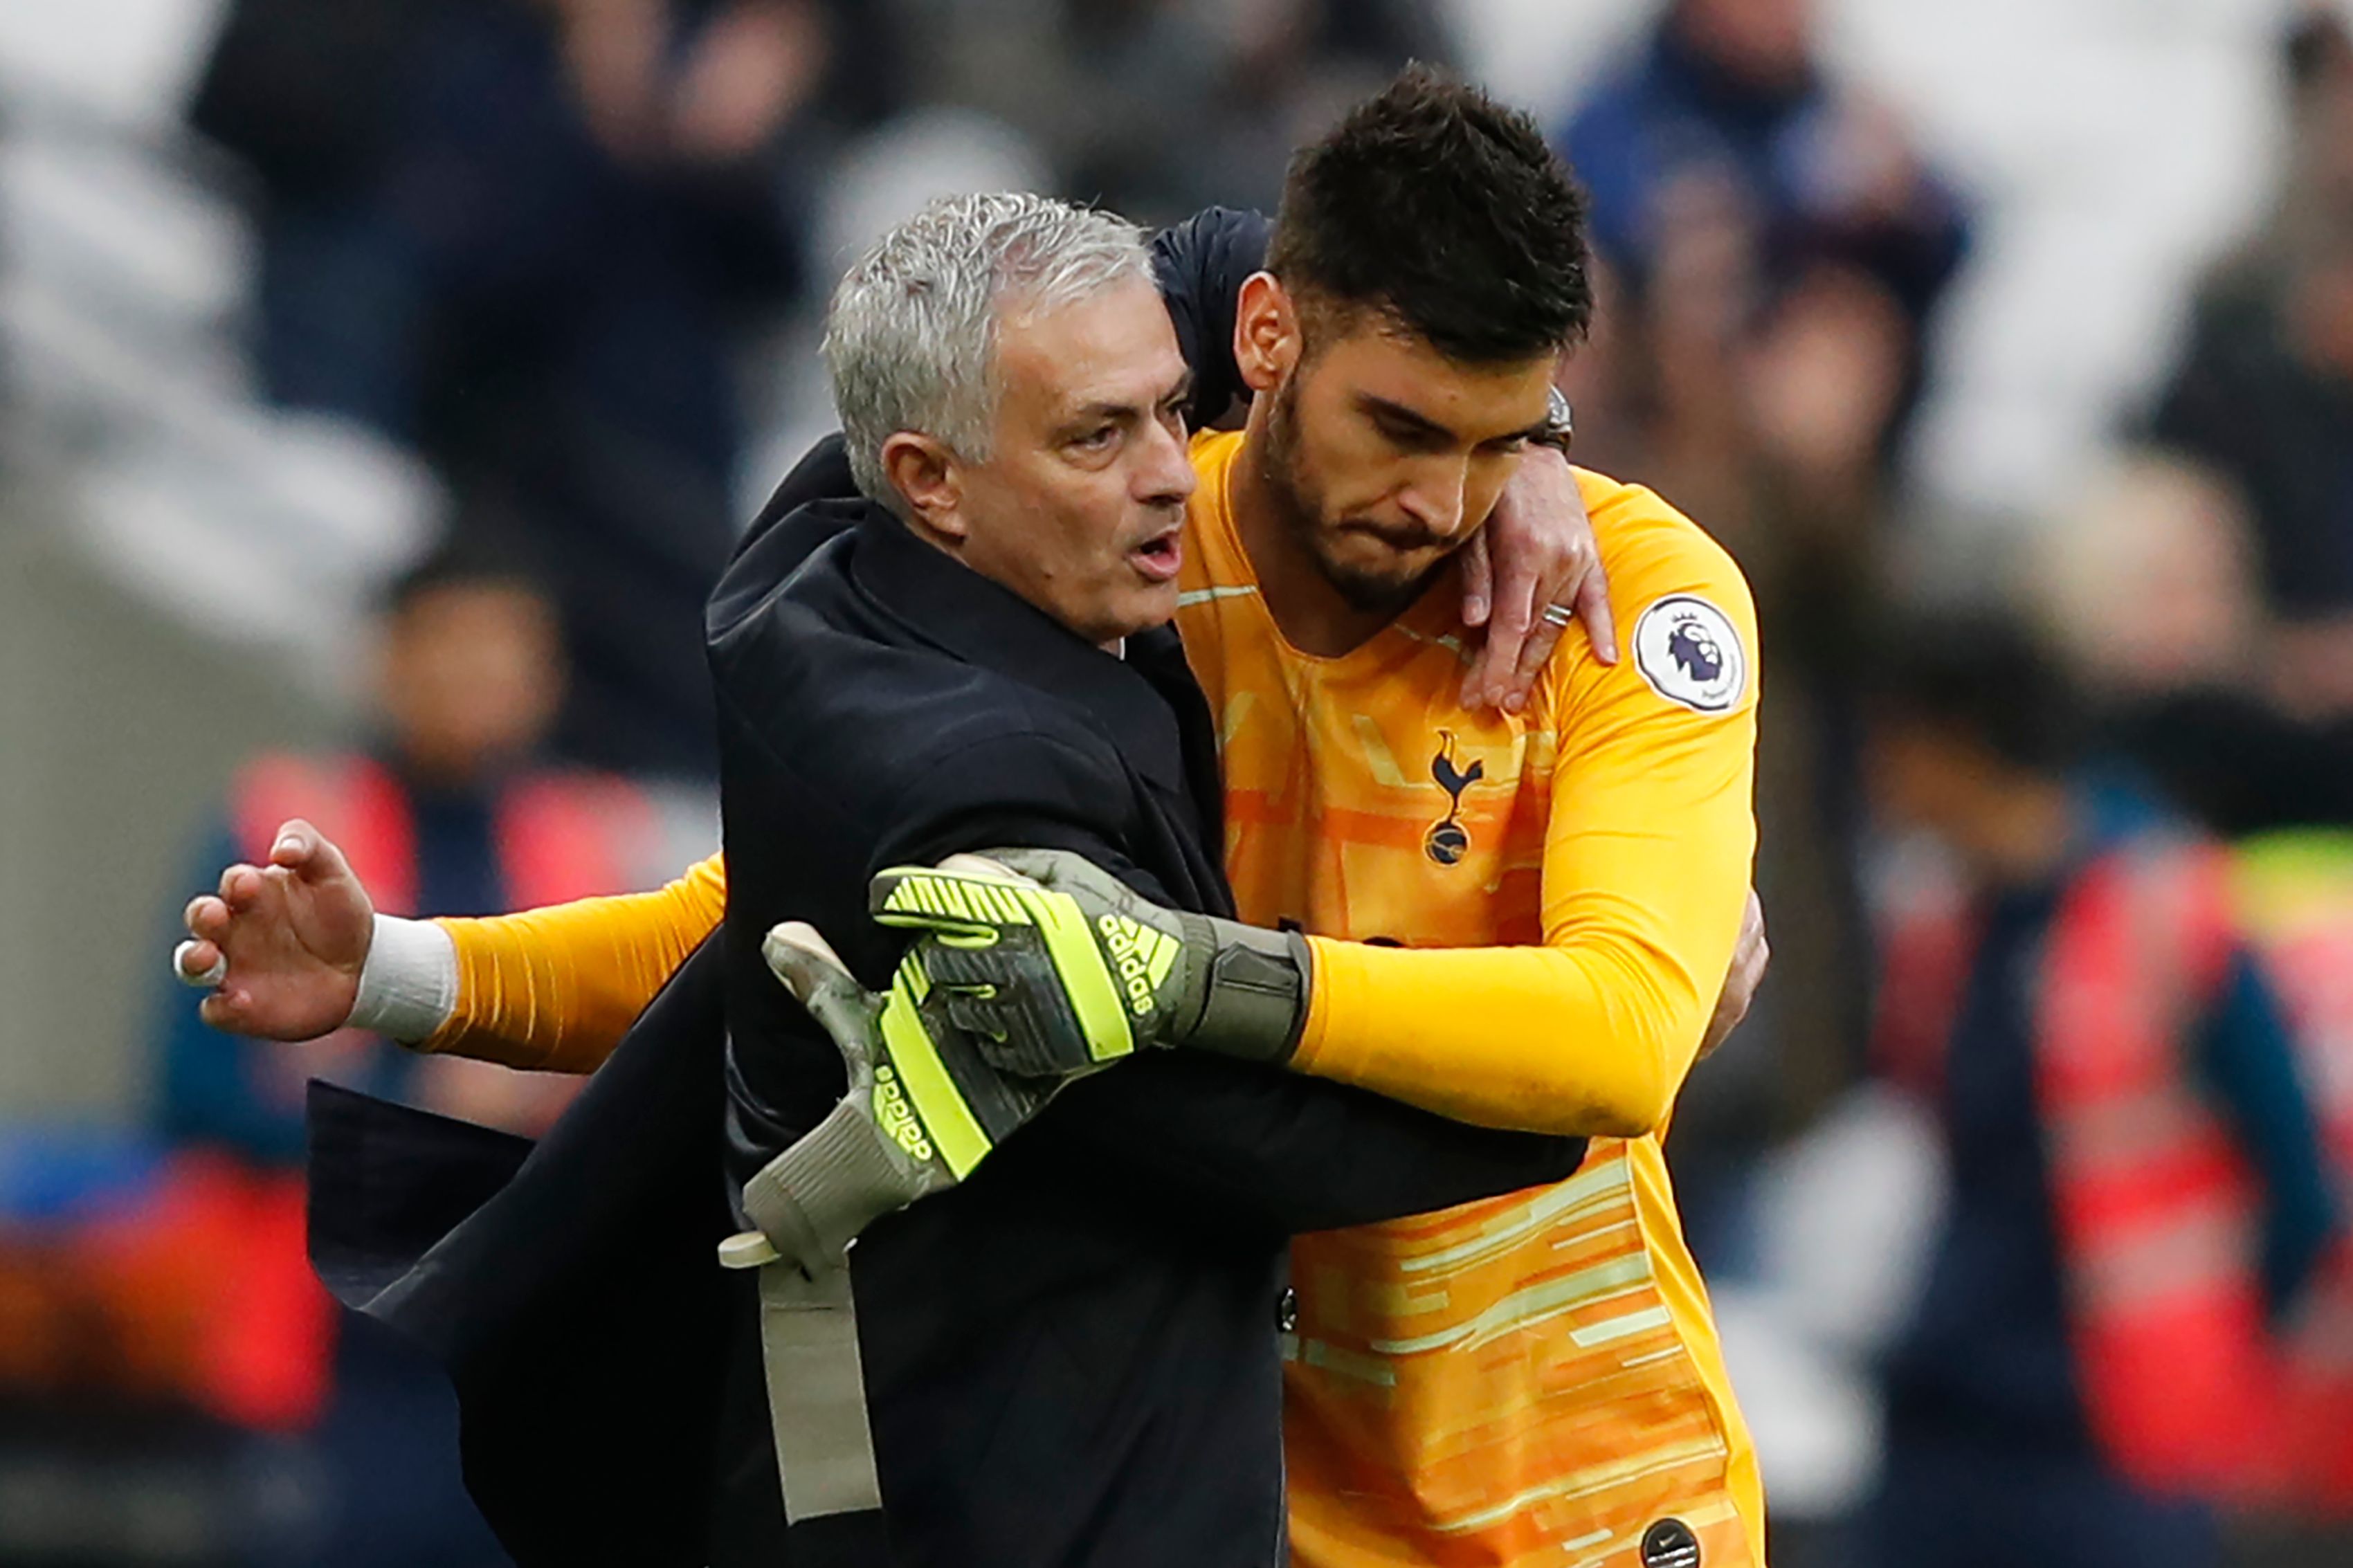 El técnico Jose Mourinho celebra con el portero del Tottenham  el argentino Paulo Gazzaniga la victoria de este sábado. (Foto Prensa Libre: AFP)